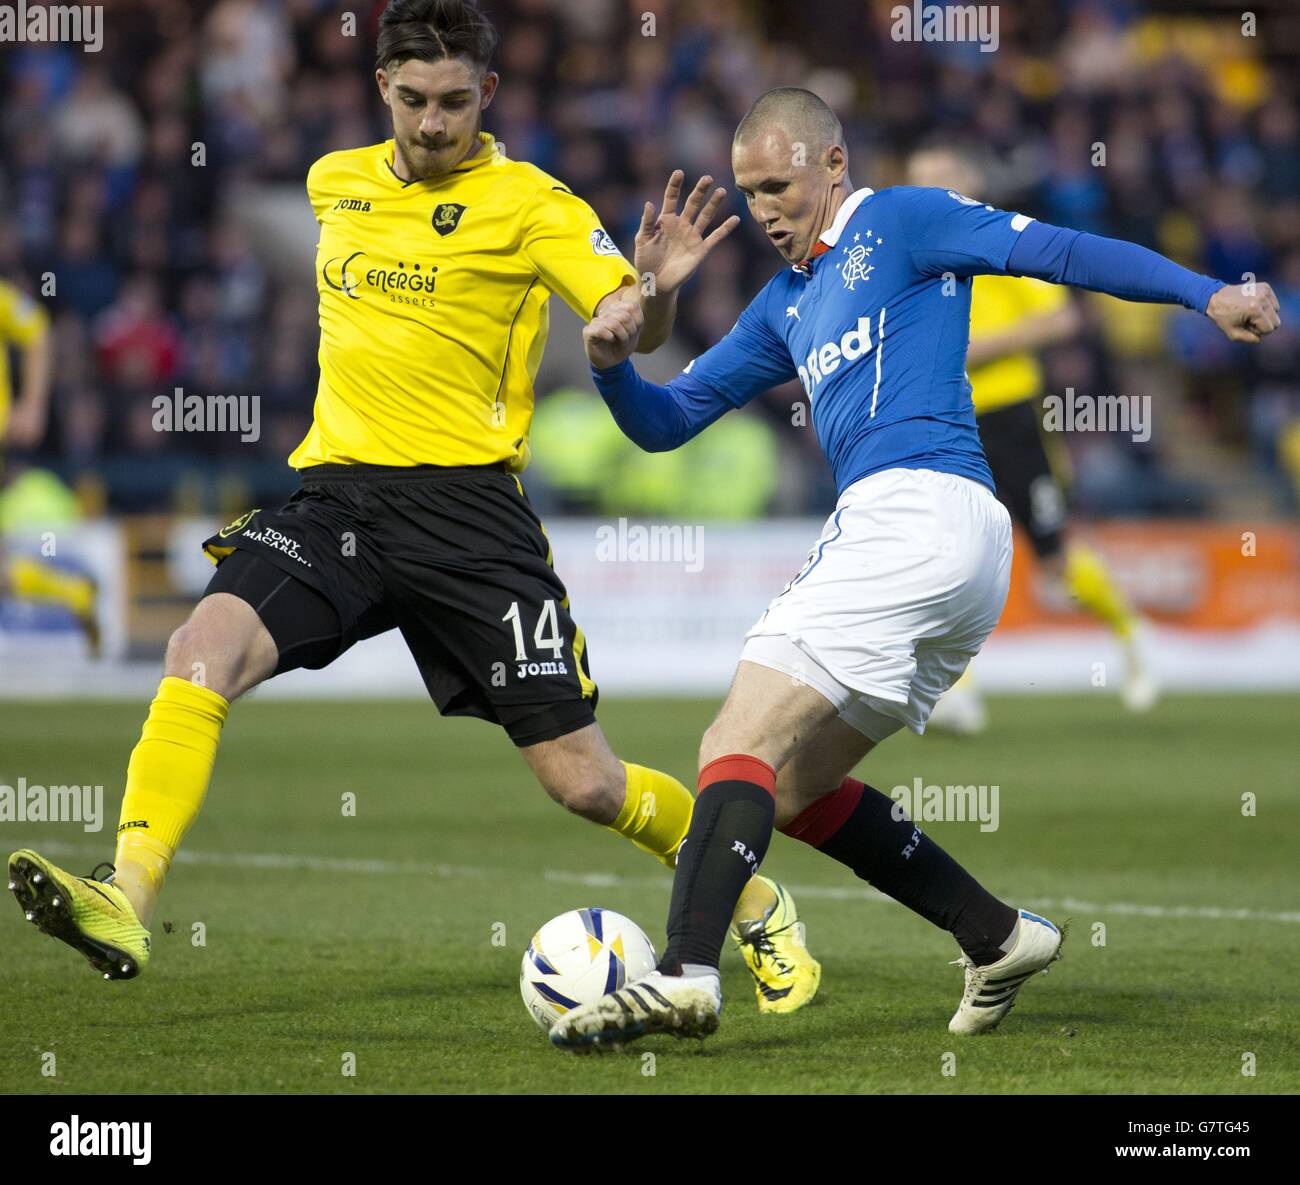 Soccer - Scottish Championship - Livingston v Rangers - The Energy Assets Arena Stock Photo